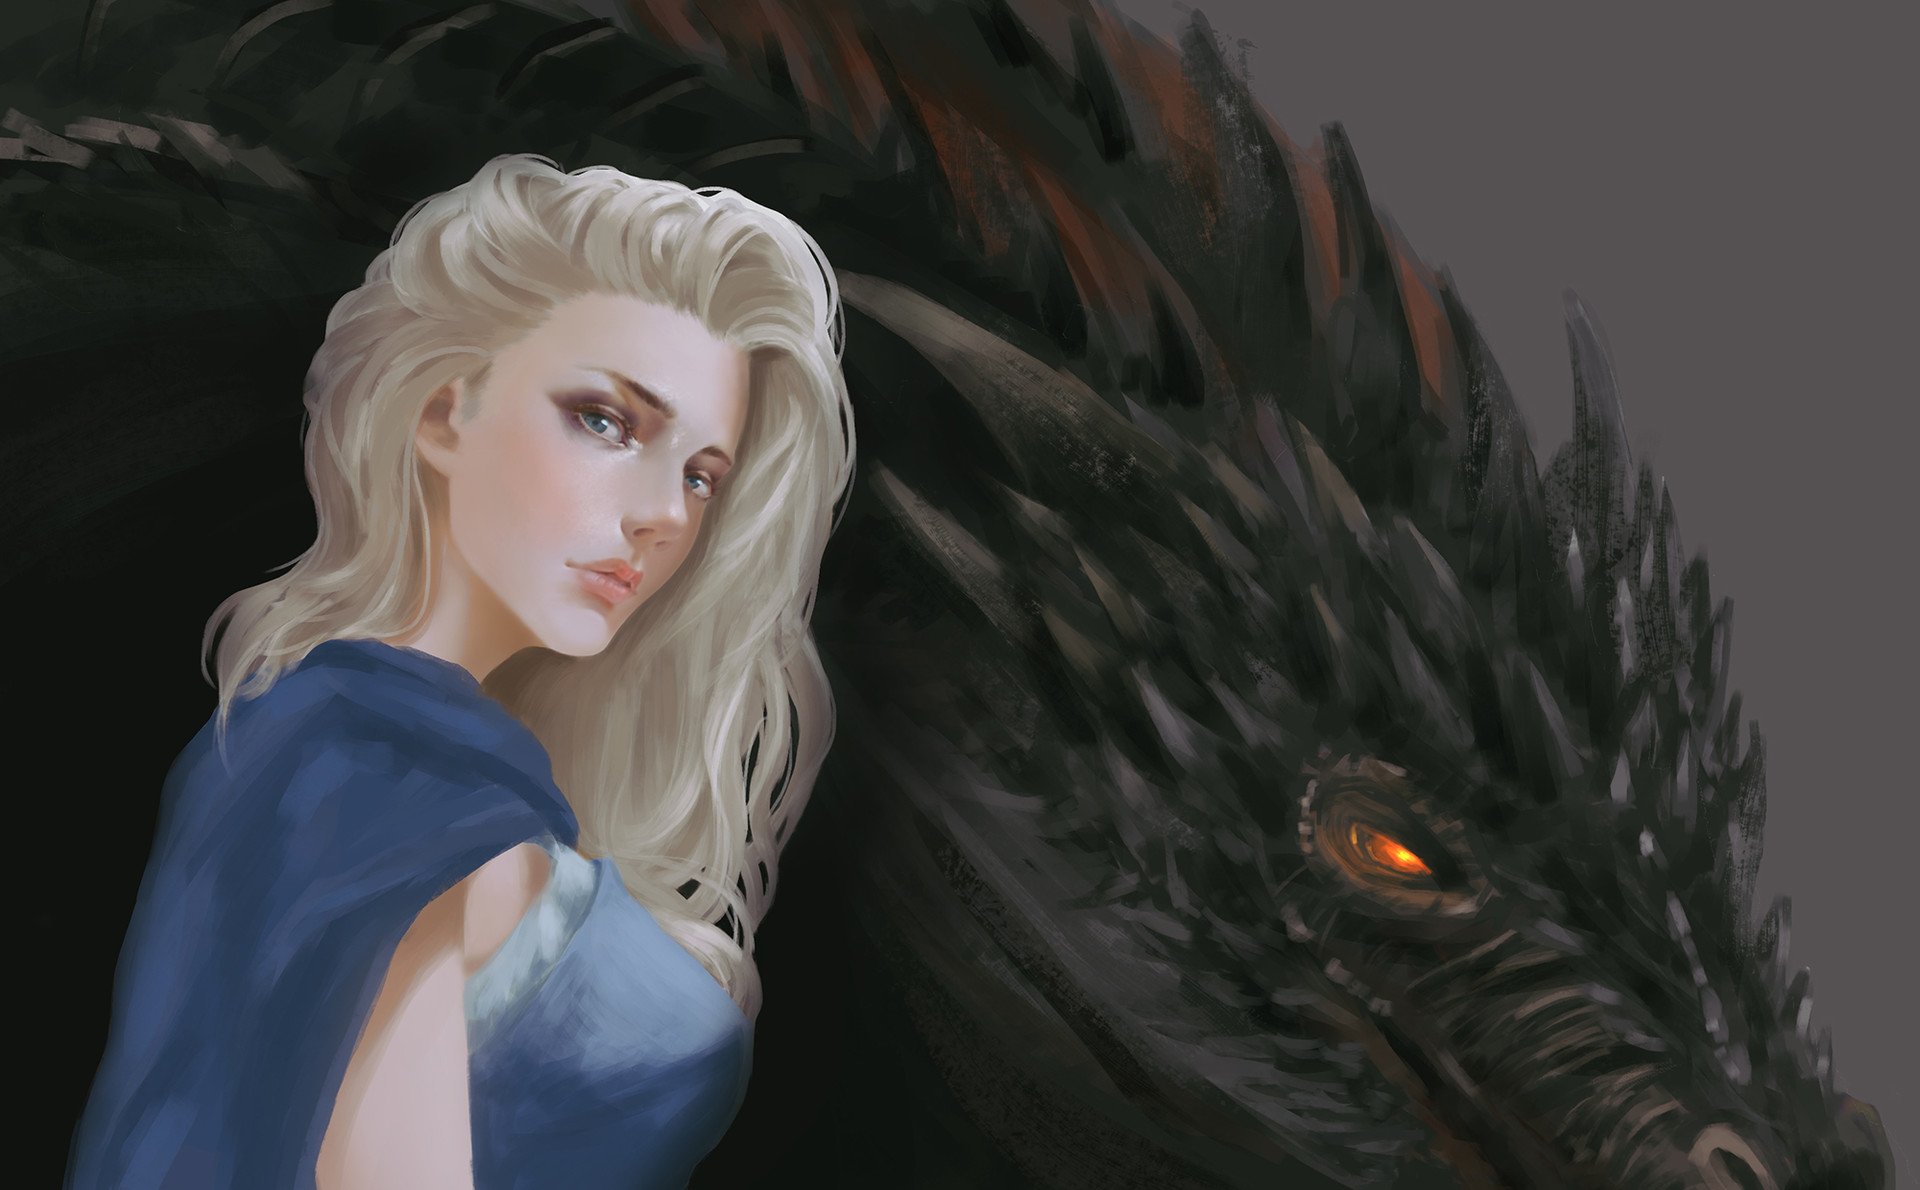 Dragon Queen Khaleesi Cartoon Artwork Wallpapers